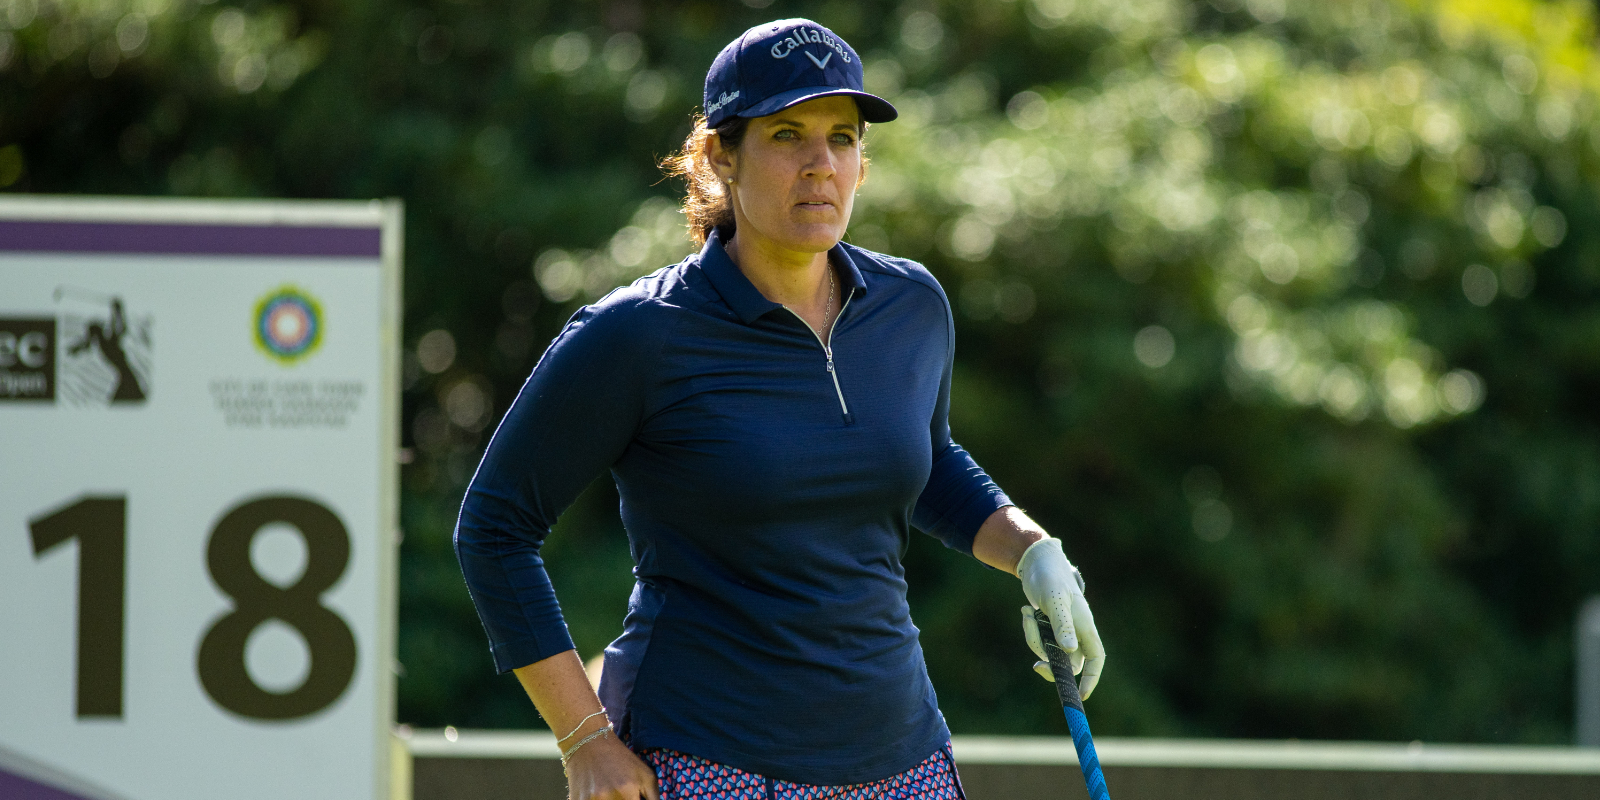 Caroline Rominger professionelle Golfspielerin auf dem Golfplatz